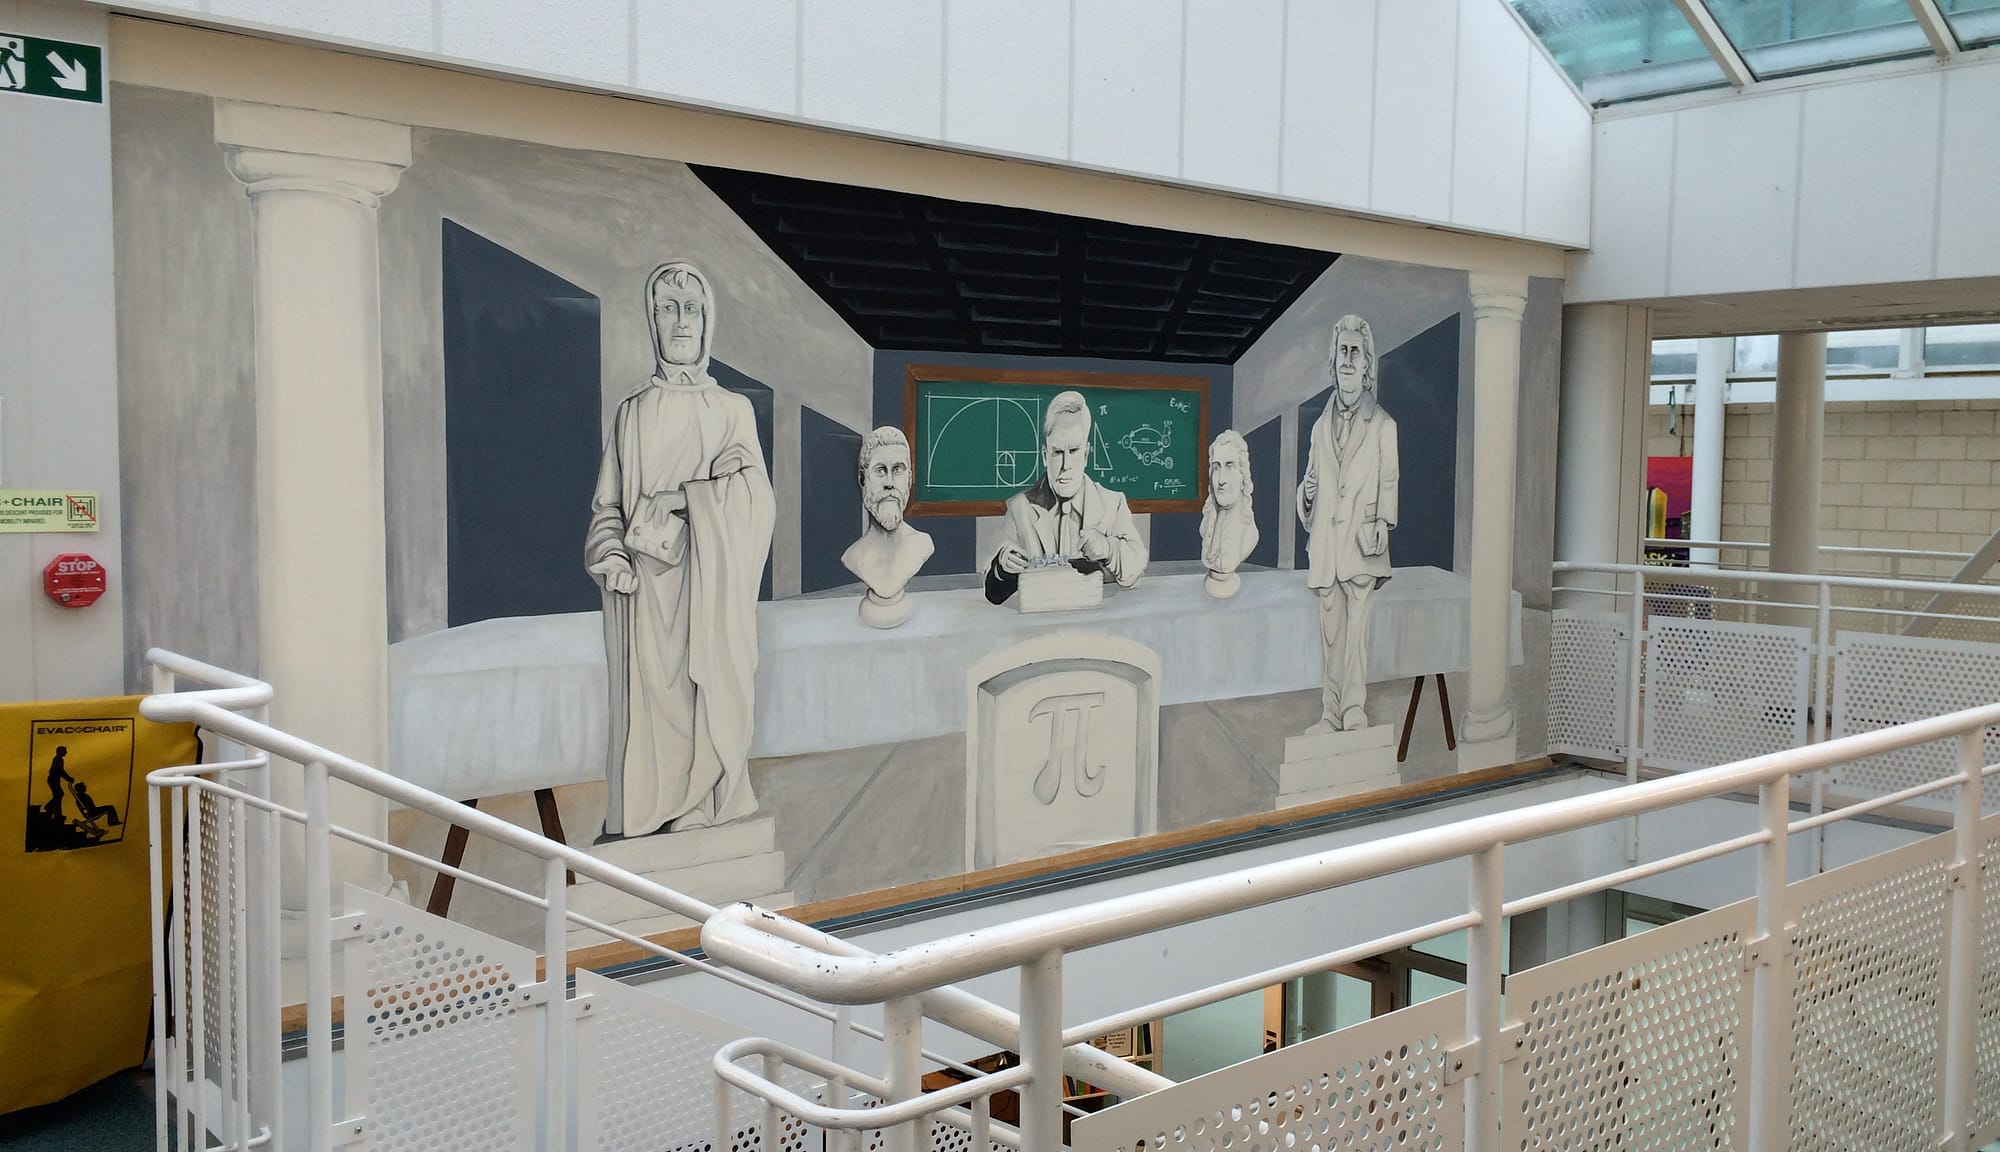 Maths Wall mural school